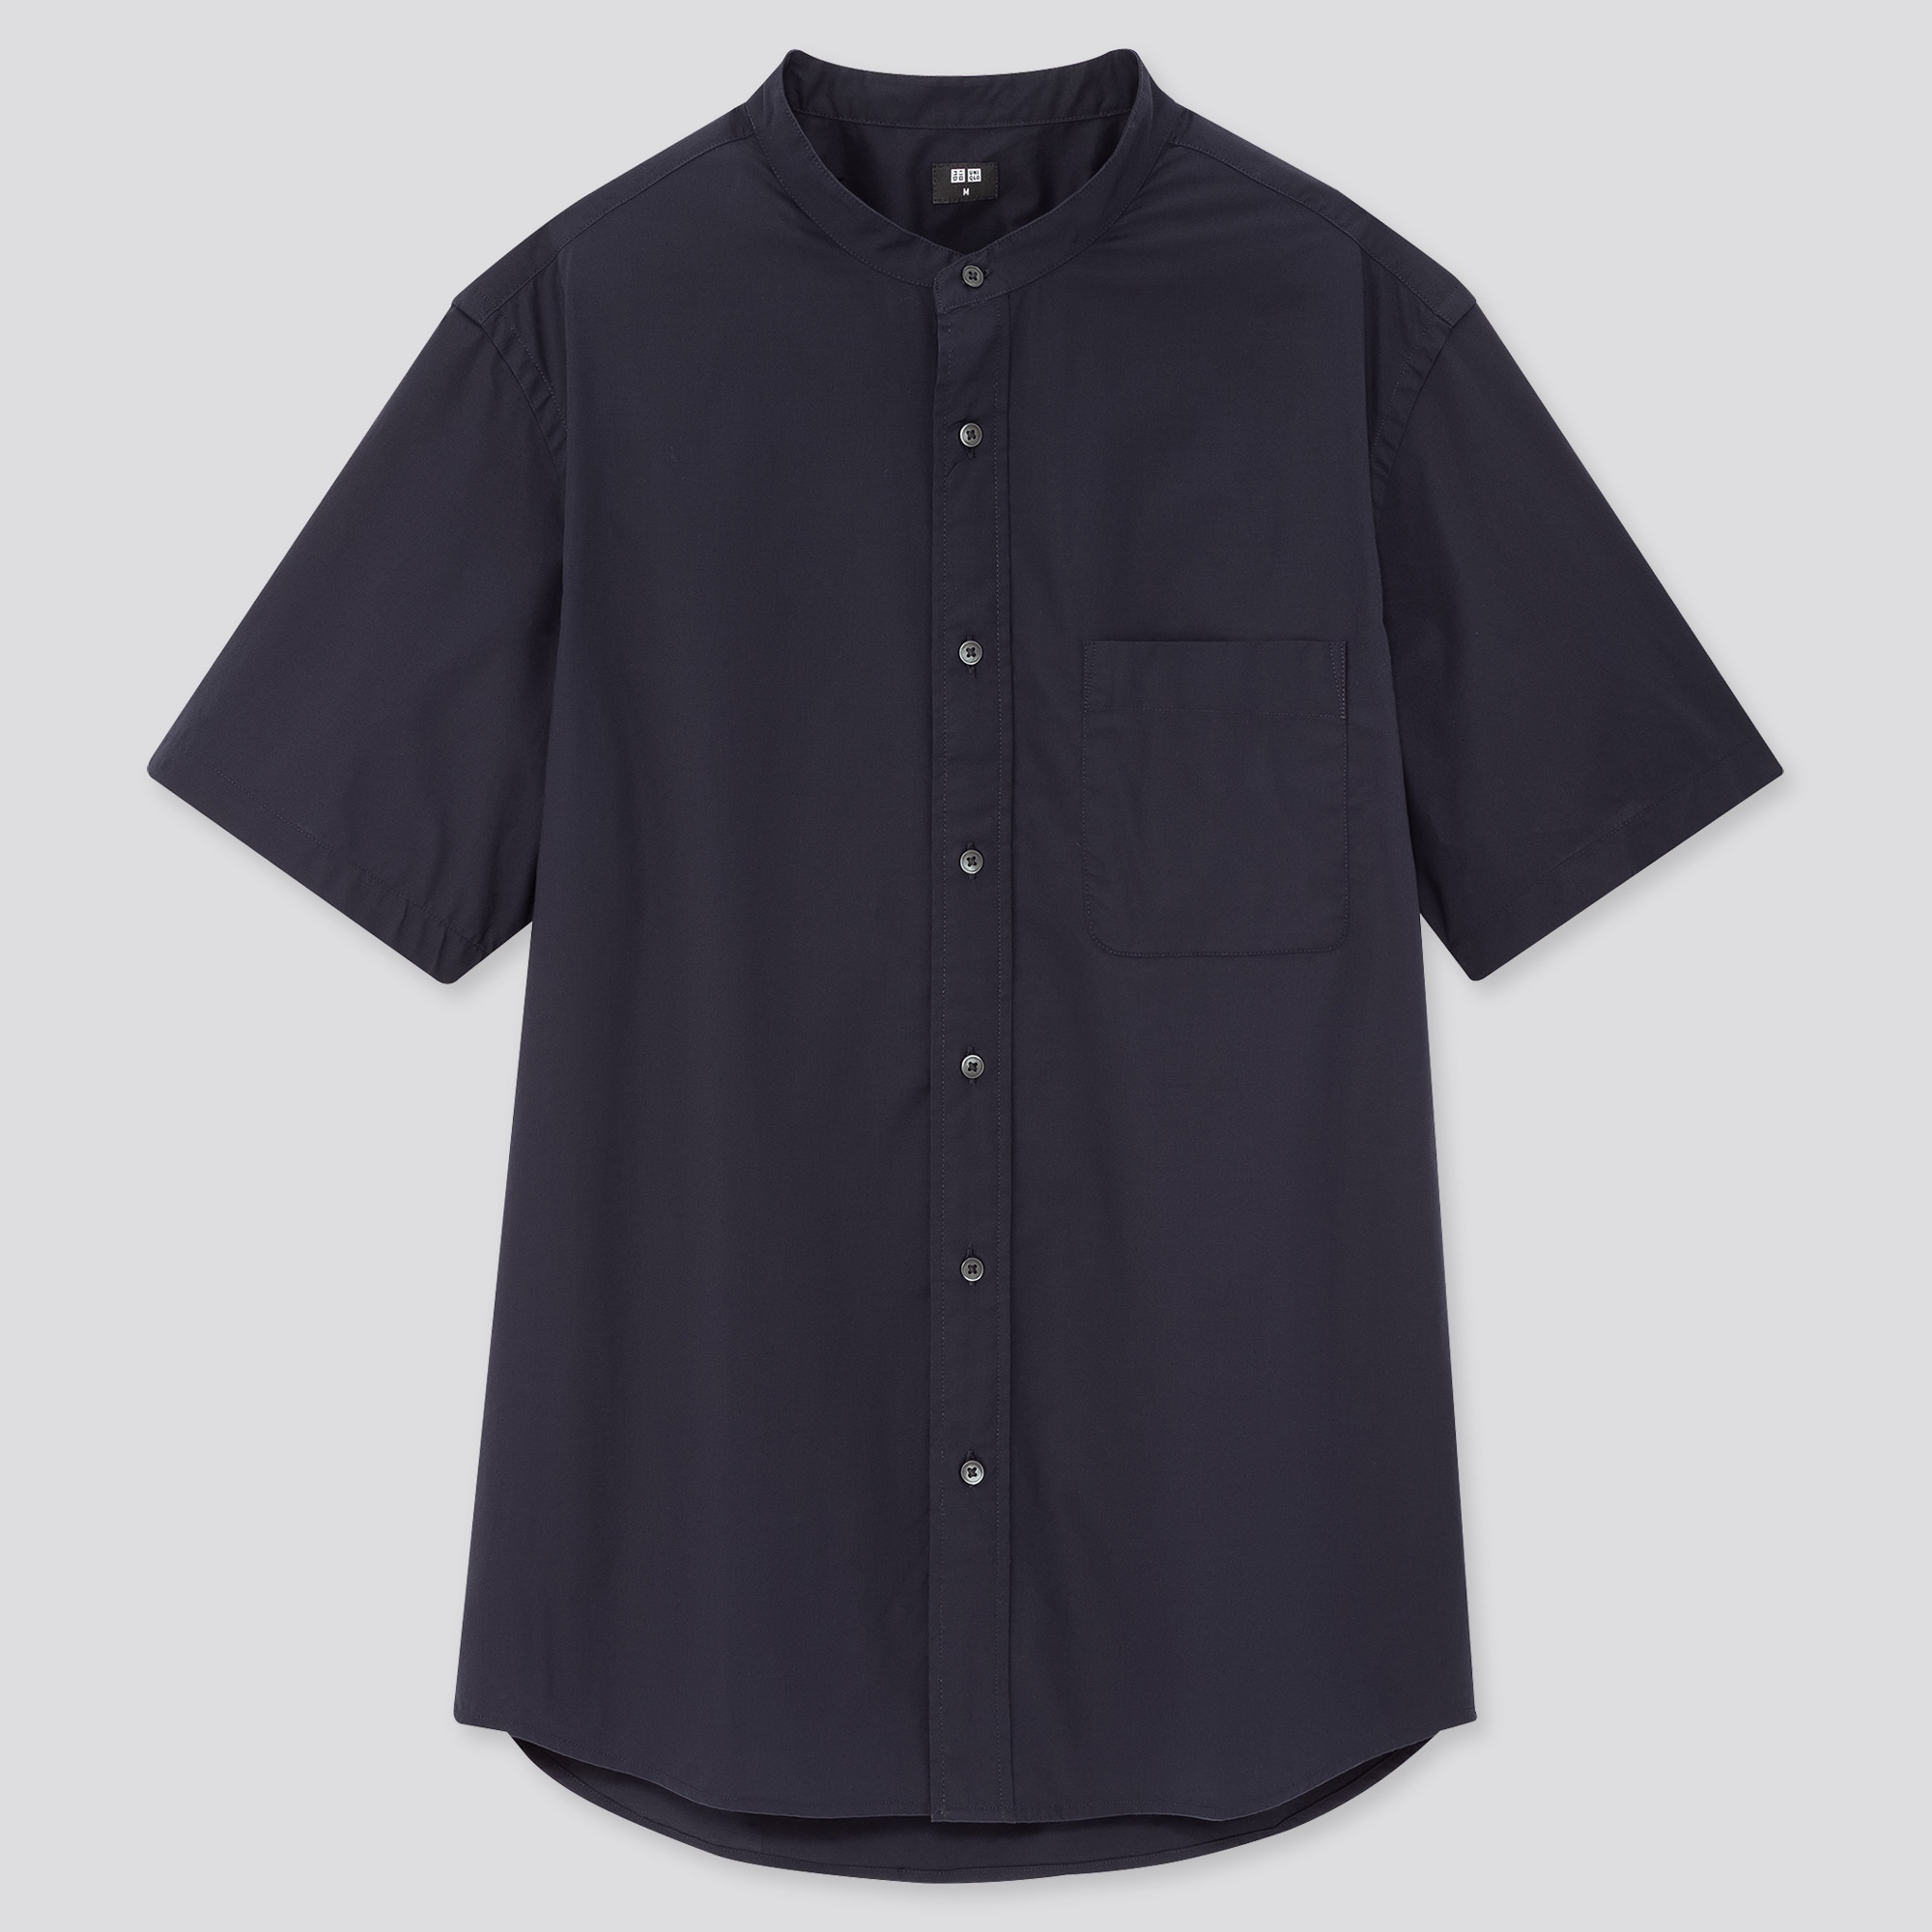 Uniqlo Mens Shirts  Men Oxford Shirt ButtonDown Collar Off White   Iniziative Immobiliari